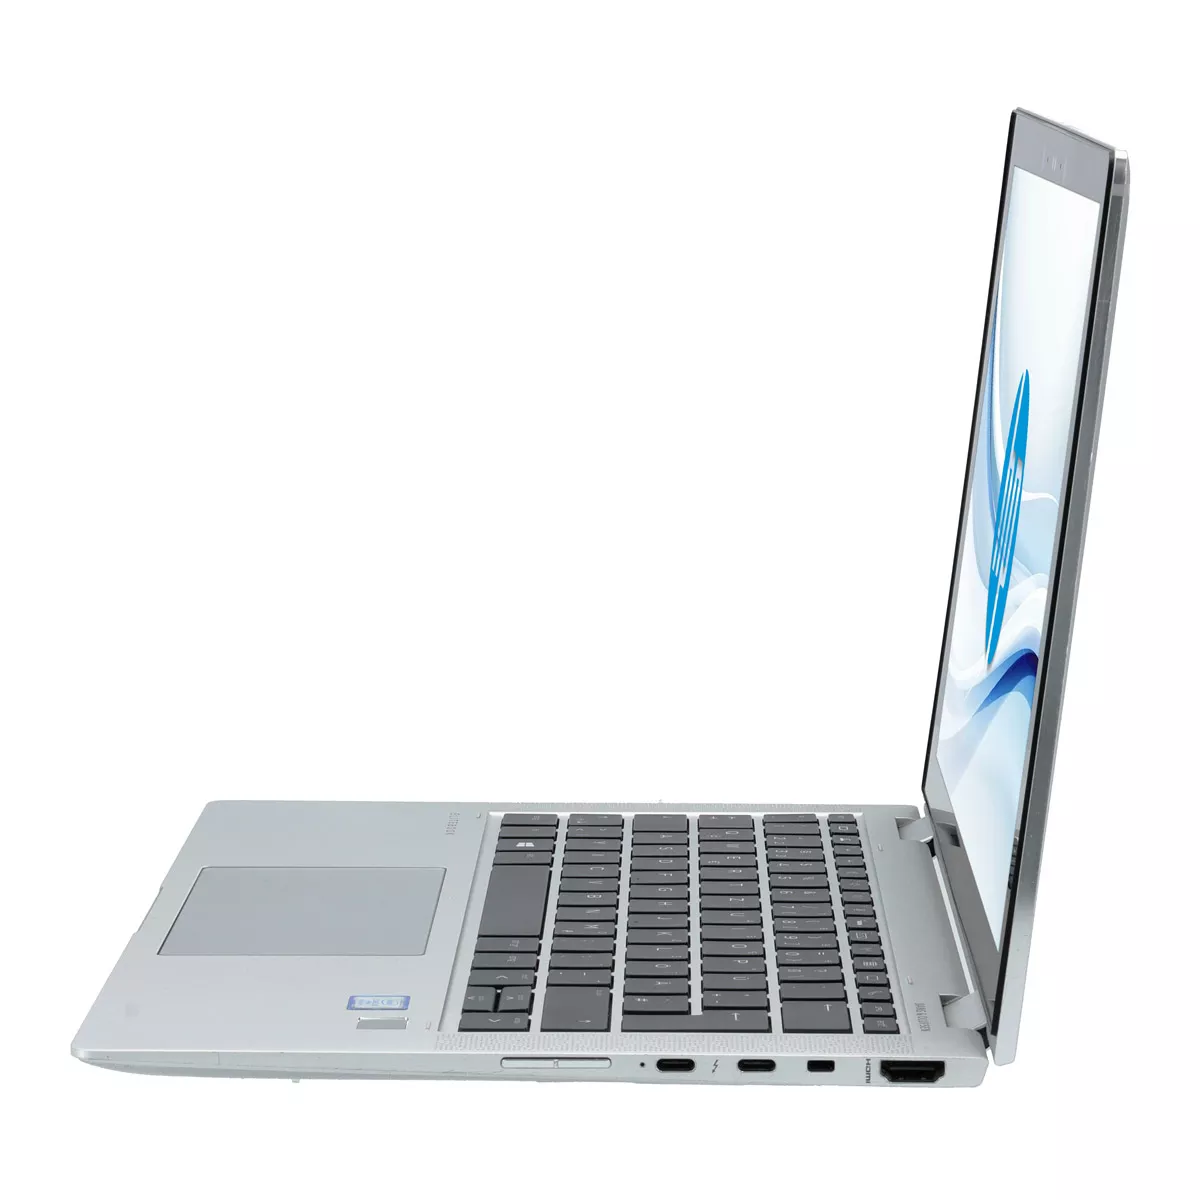 HP EliteBook x360 1030 G4 Core i7 8665U Full-HD Touch 16 GB 500 GB M.2 nVME SSD Webcam A+